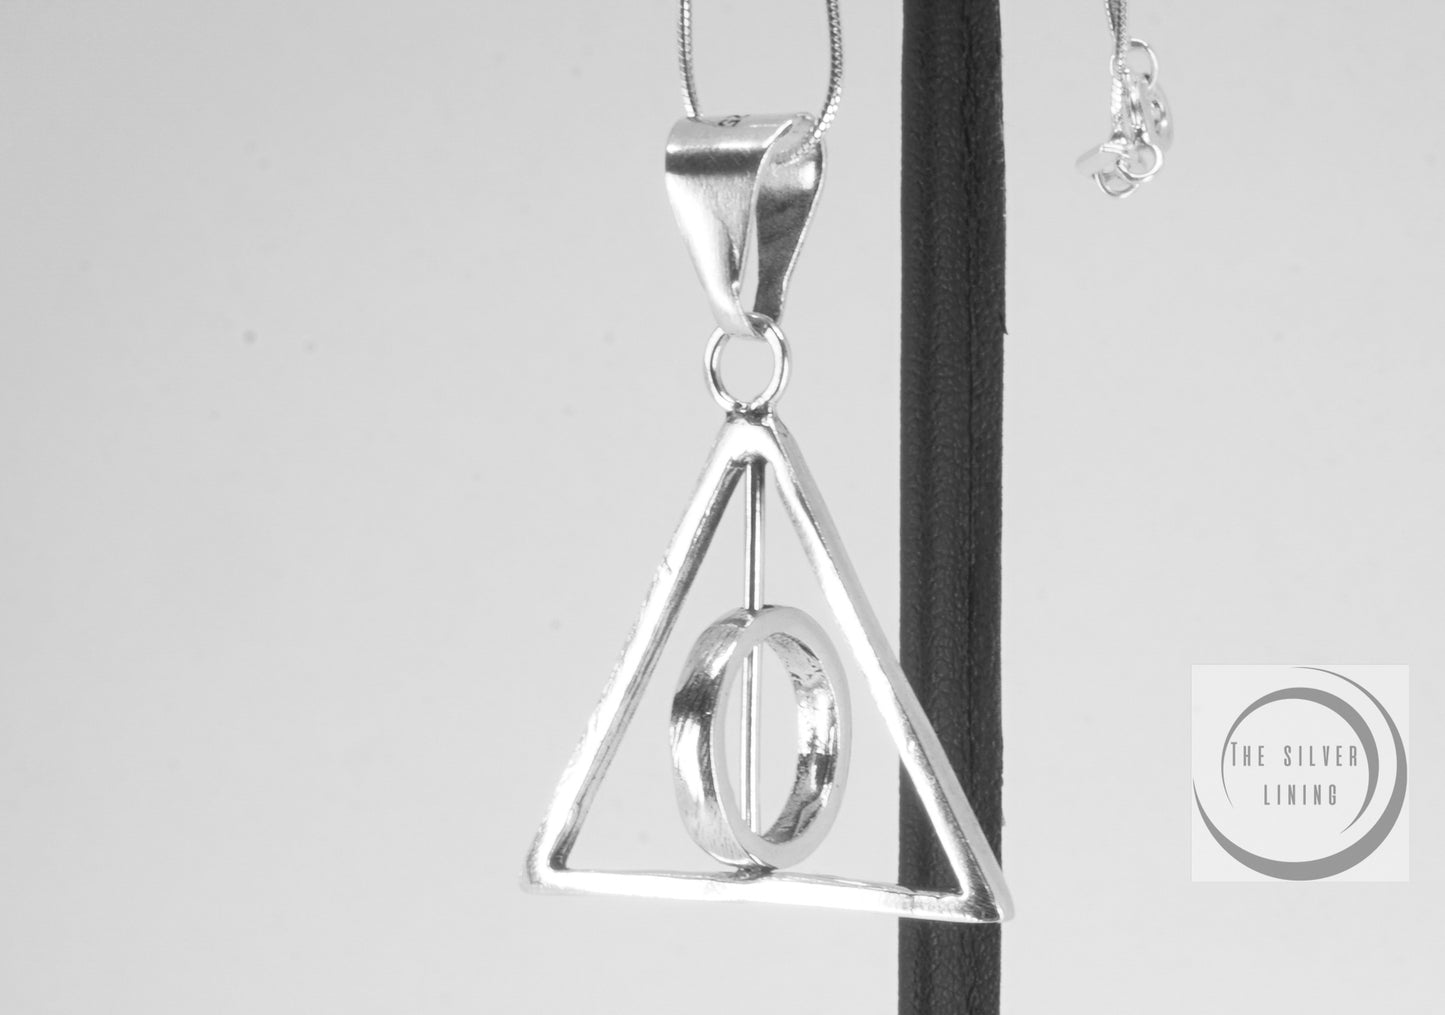 Dije de plata 925, Las Reliquias de la Muerte de Harry Potter con cadena incluída